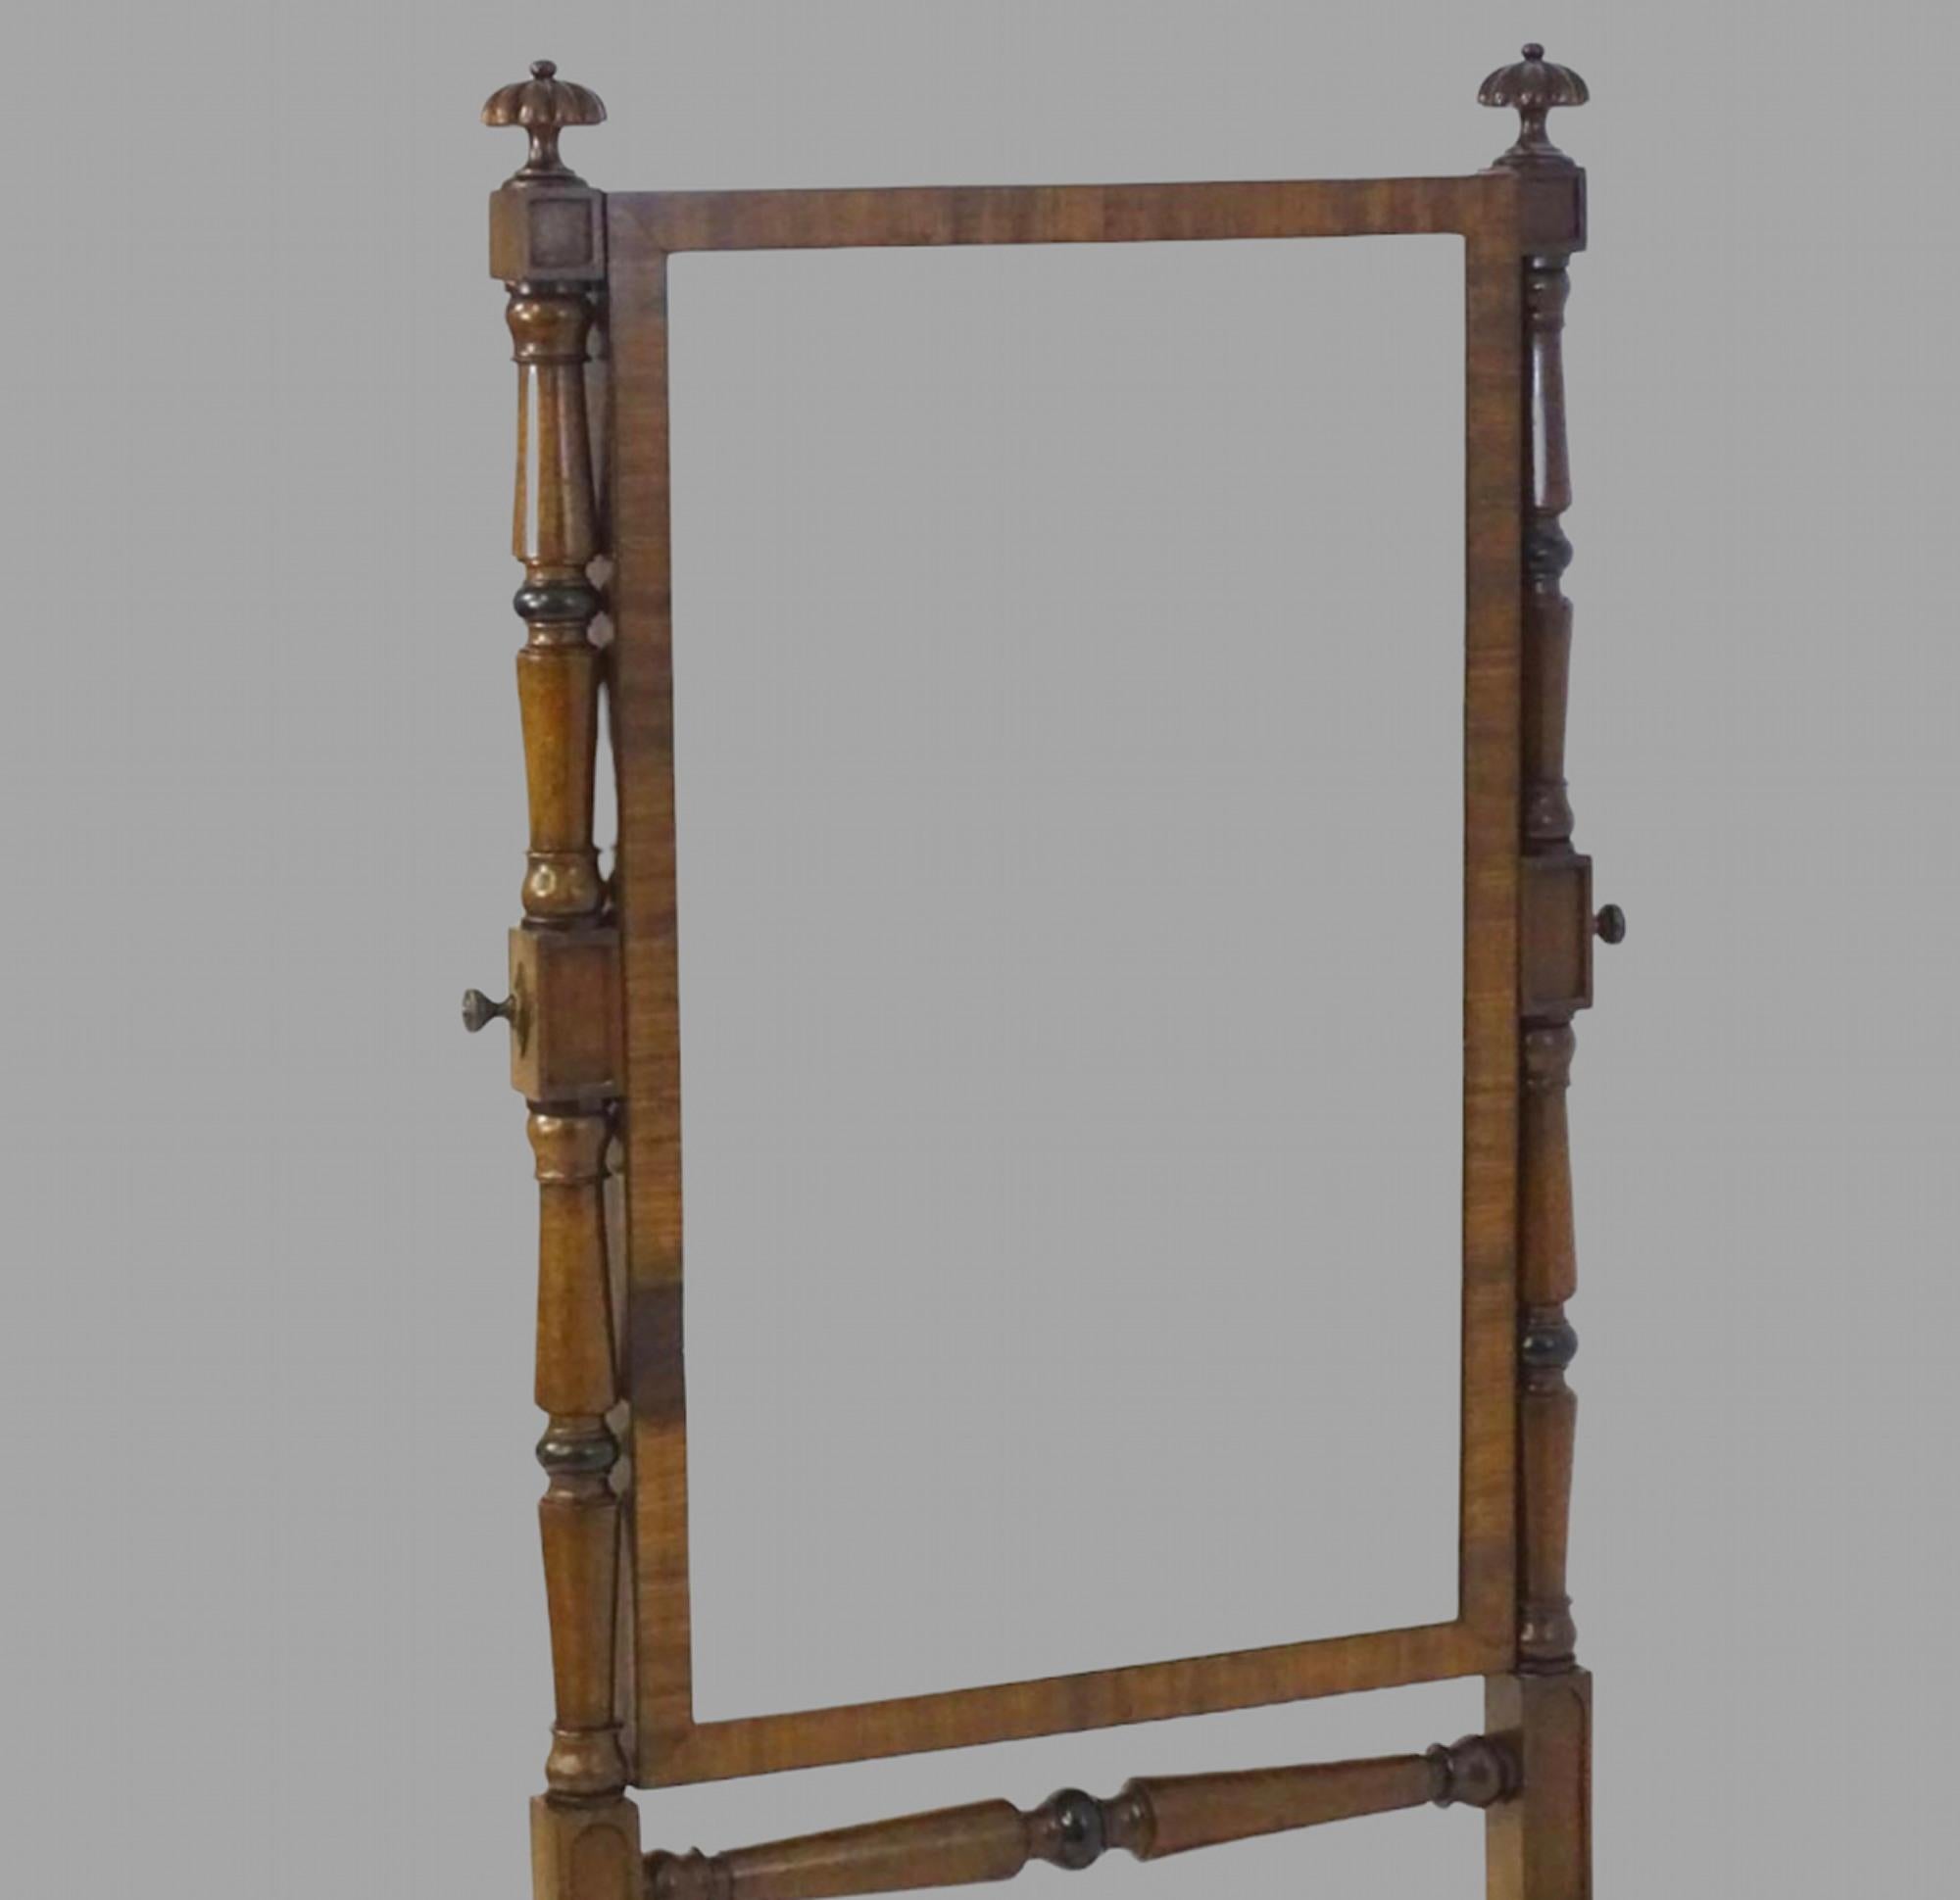 Ein früher Chevalspiegel aus Mahagoni aus dem 19. Jh. mit gadronierten Endstücken über zwei gedrehten, sich verjüngenden Stützen, die einen rechteckigen Spiegel flankieren, und mit vier geriffelten Cabriole-Beinen, die von gedrehten Bahren und